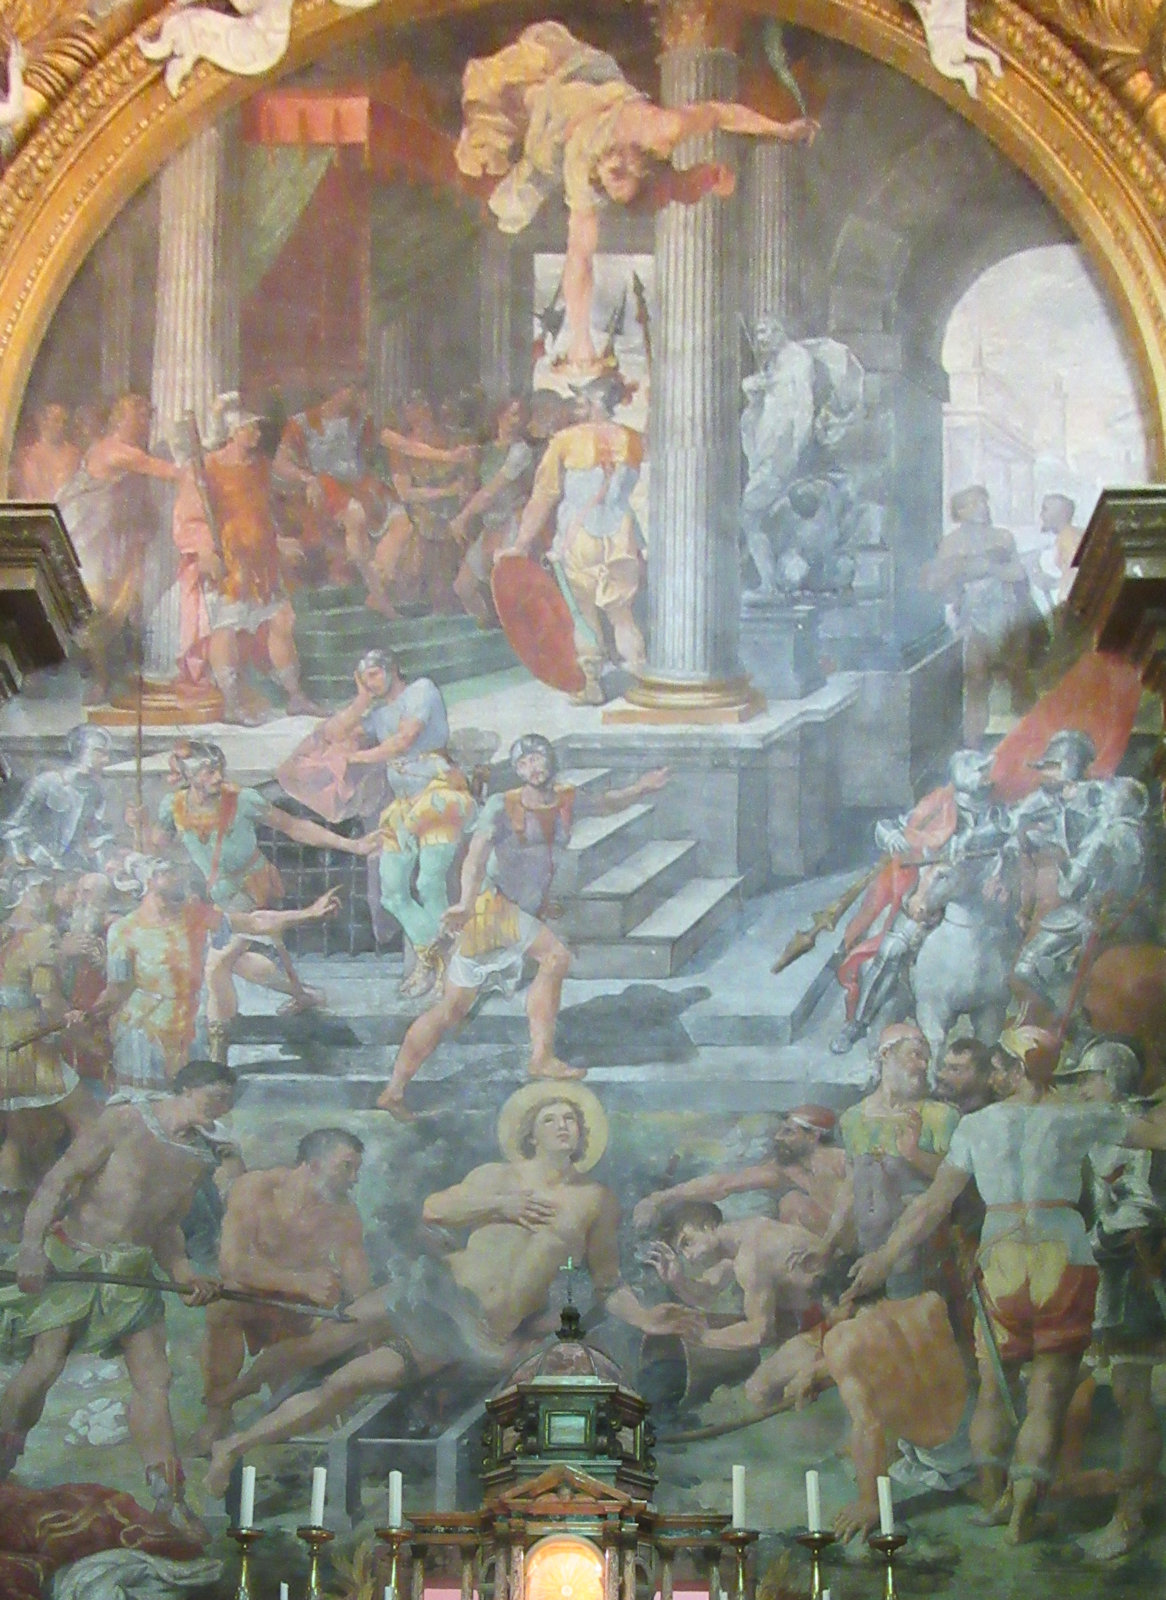 Pasquale Cati di Jesi: Altarbild, 1589, in der Kirche San Lorenzo in Panisperna in Rom